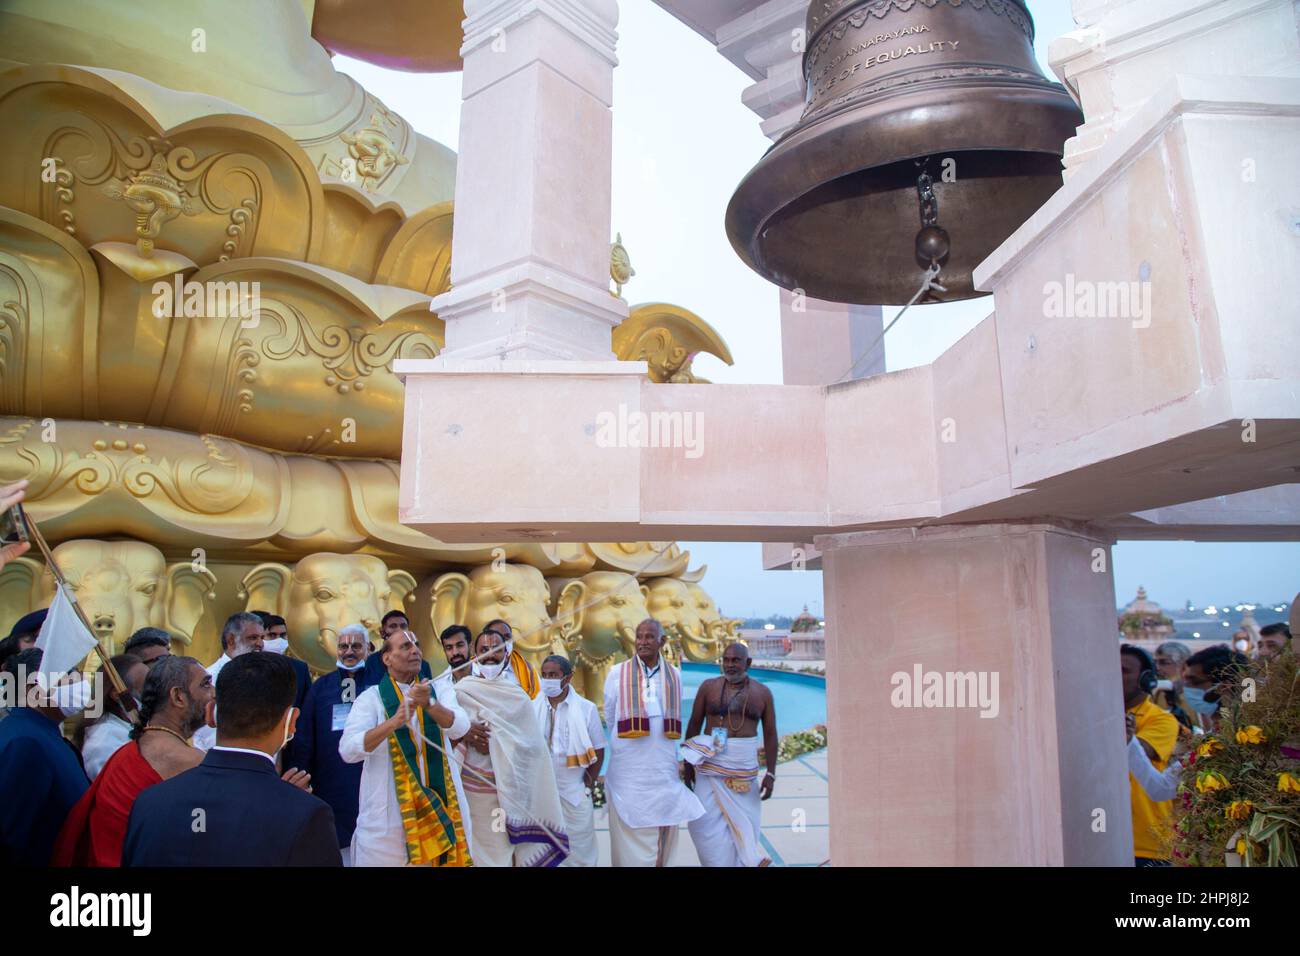 Ramanuja Estatua de la Dedicación por la Igualdad, Rajnath Singh Timing Bell, Hyderabad, Telengana, India Foto de stock